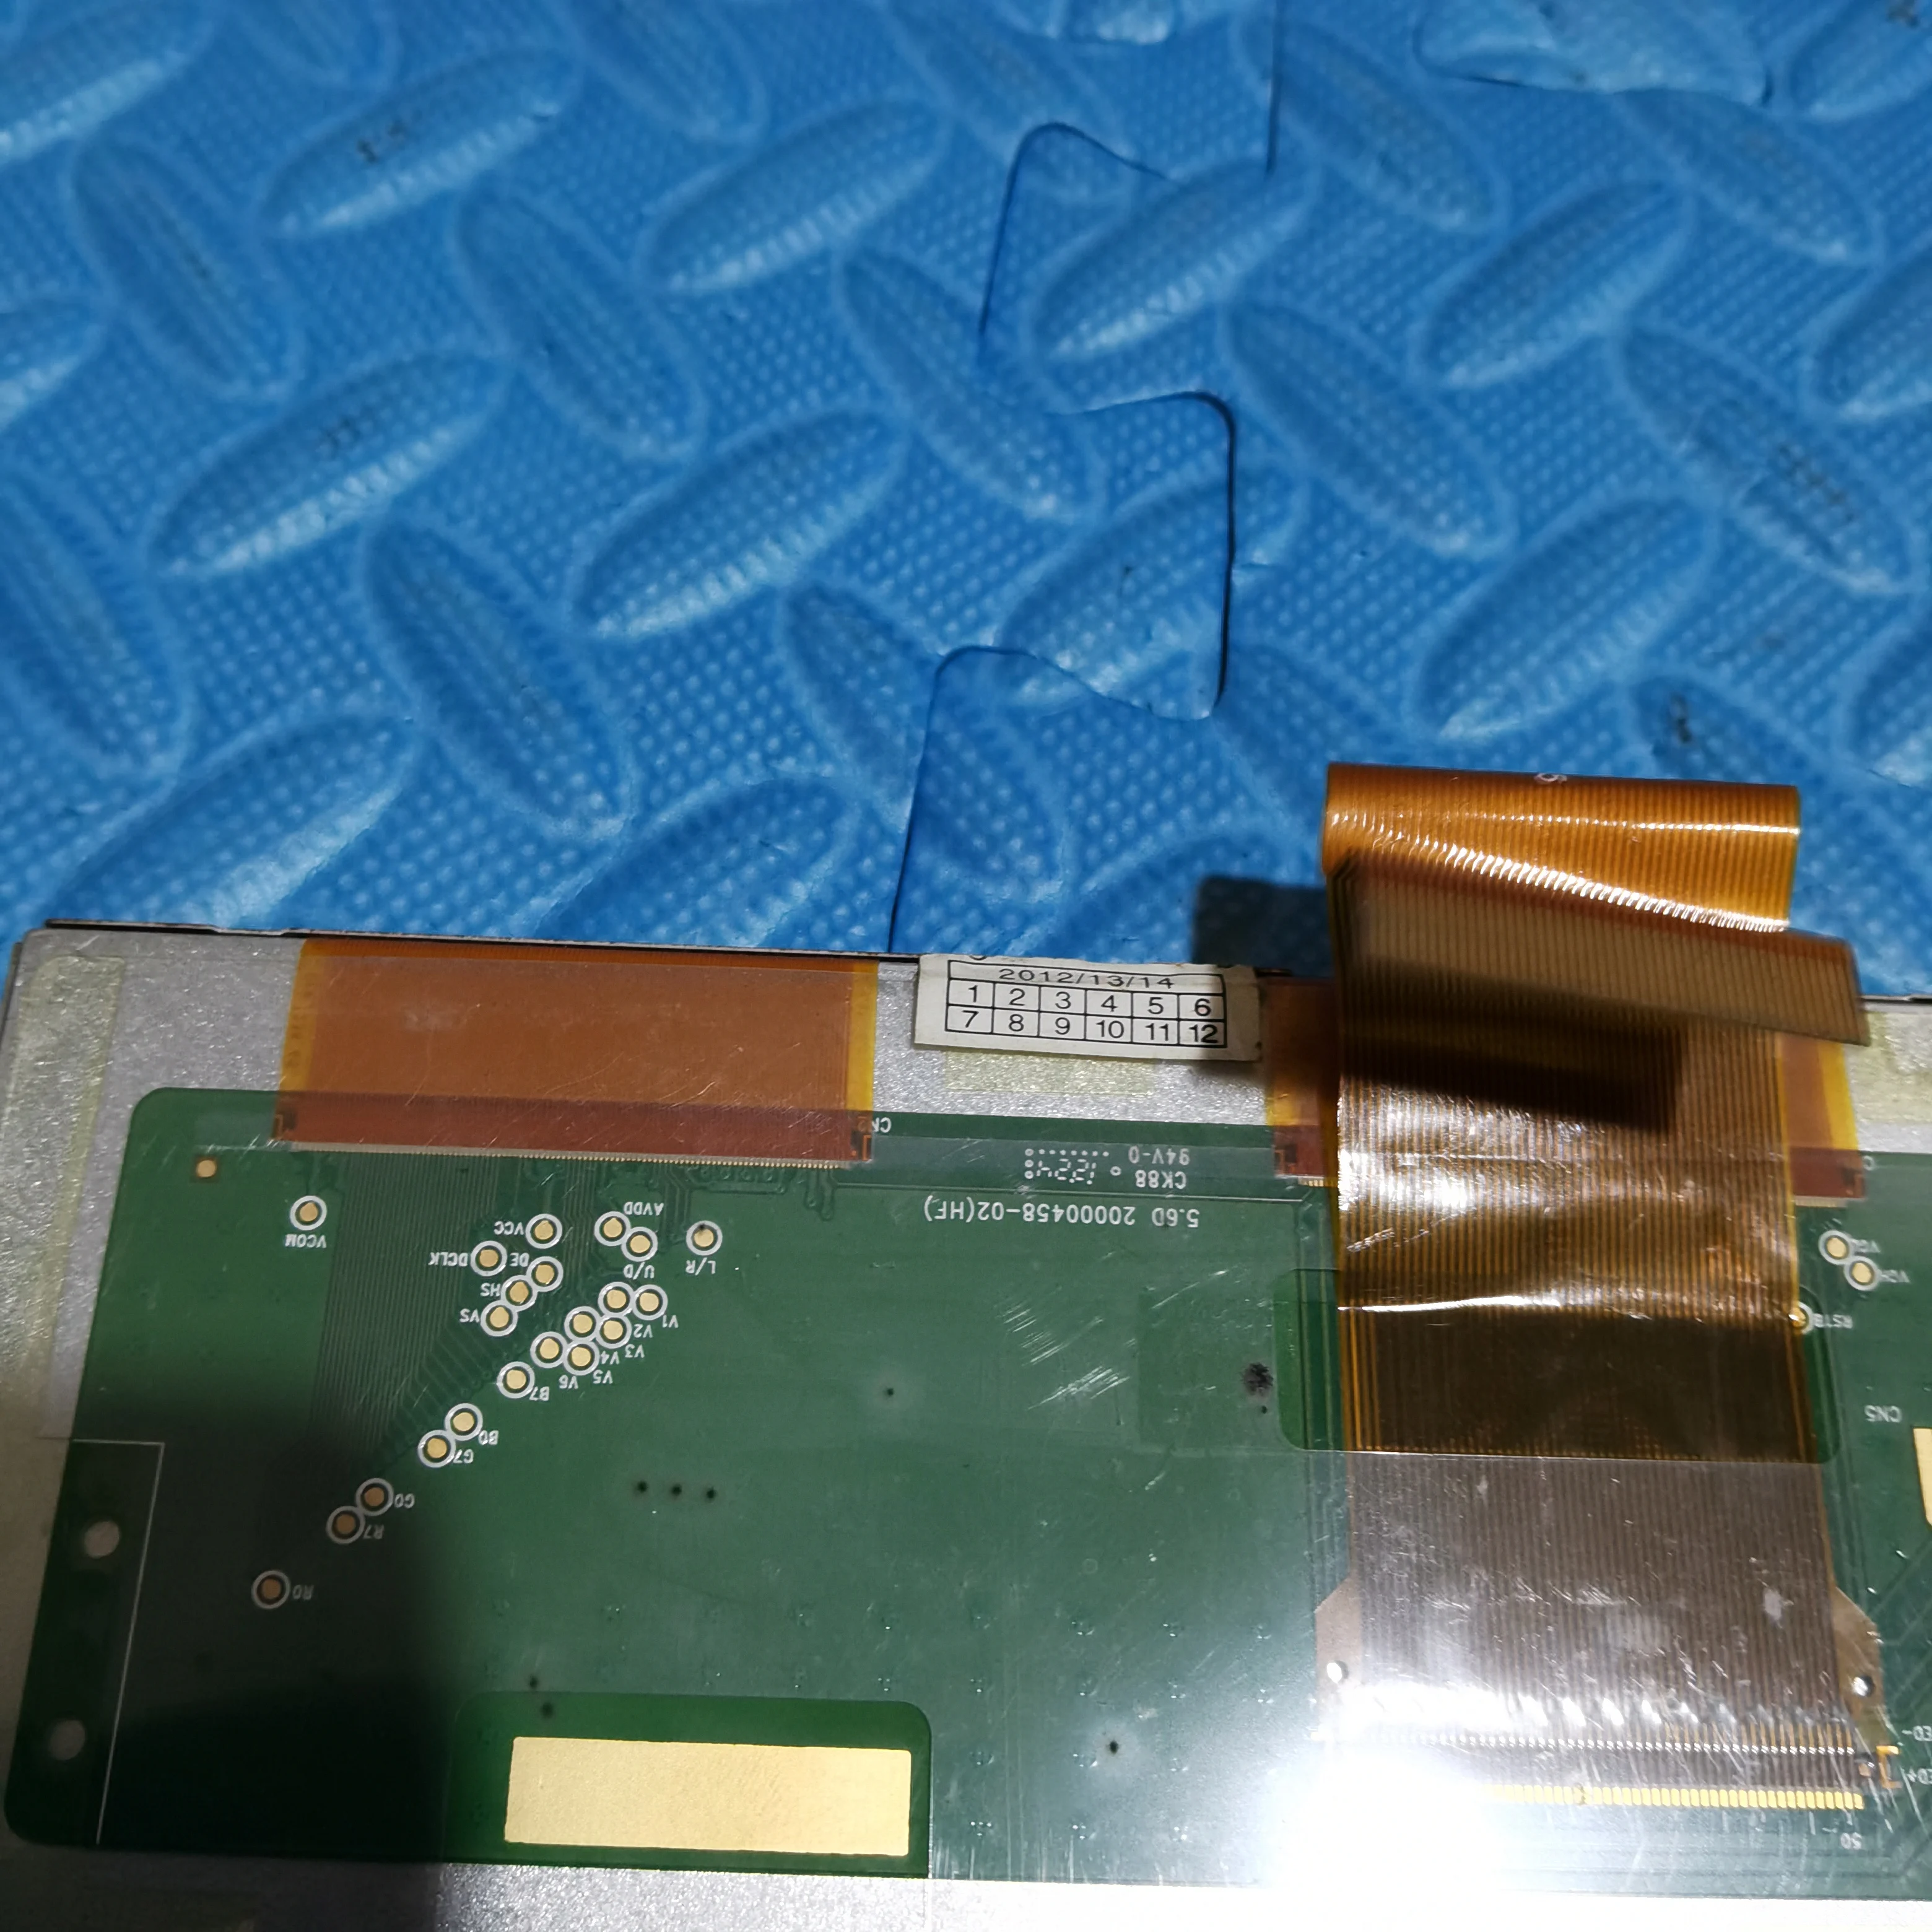 Noi AT056TN52 V. 3 5.6 inch, 640 x 480, Ecran LCD VGA AV LCD Controller Driver Placa - 2